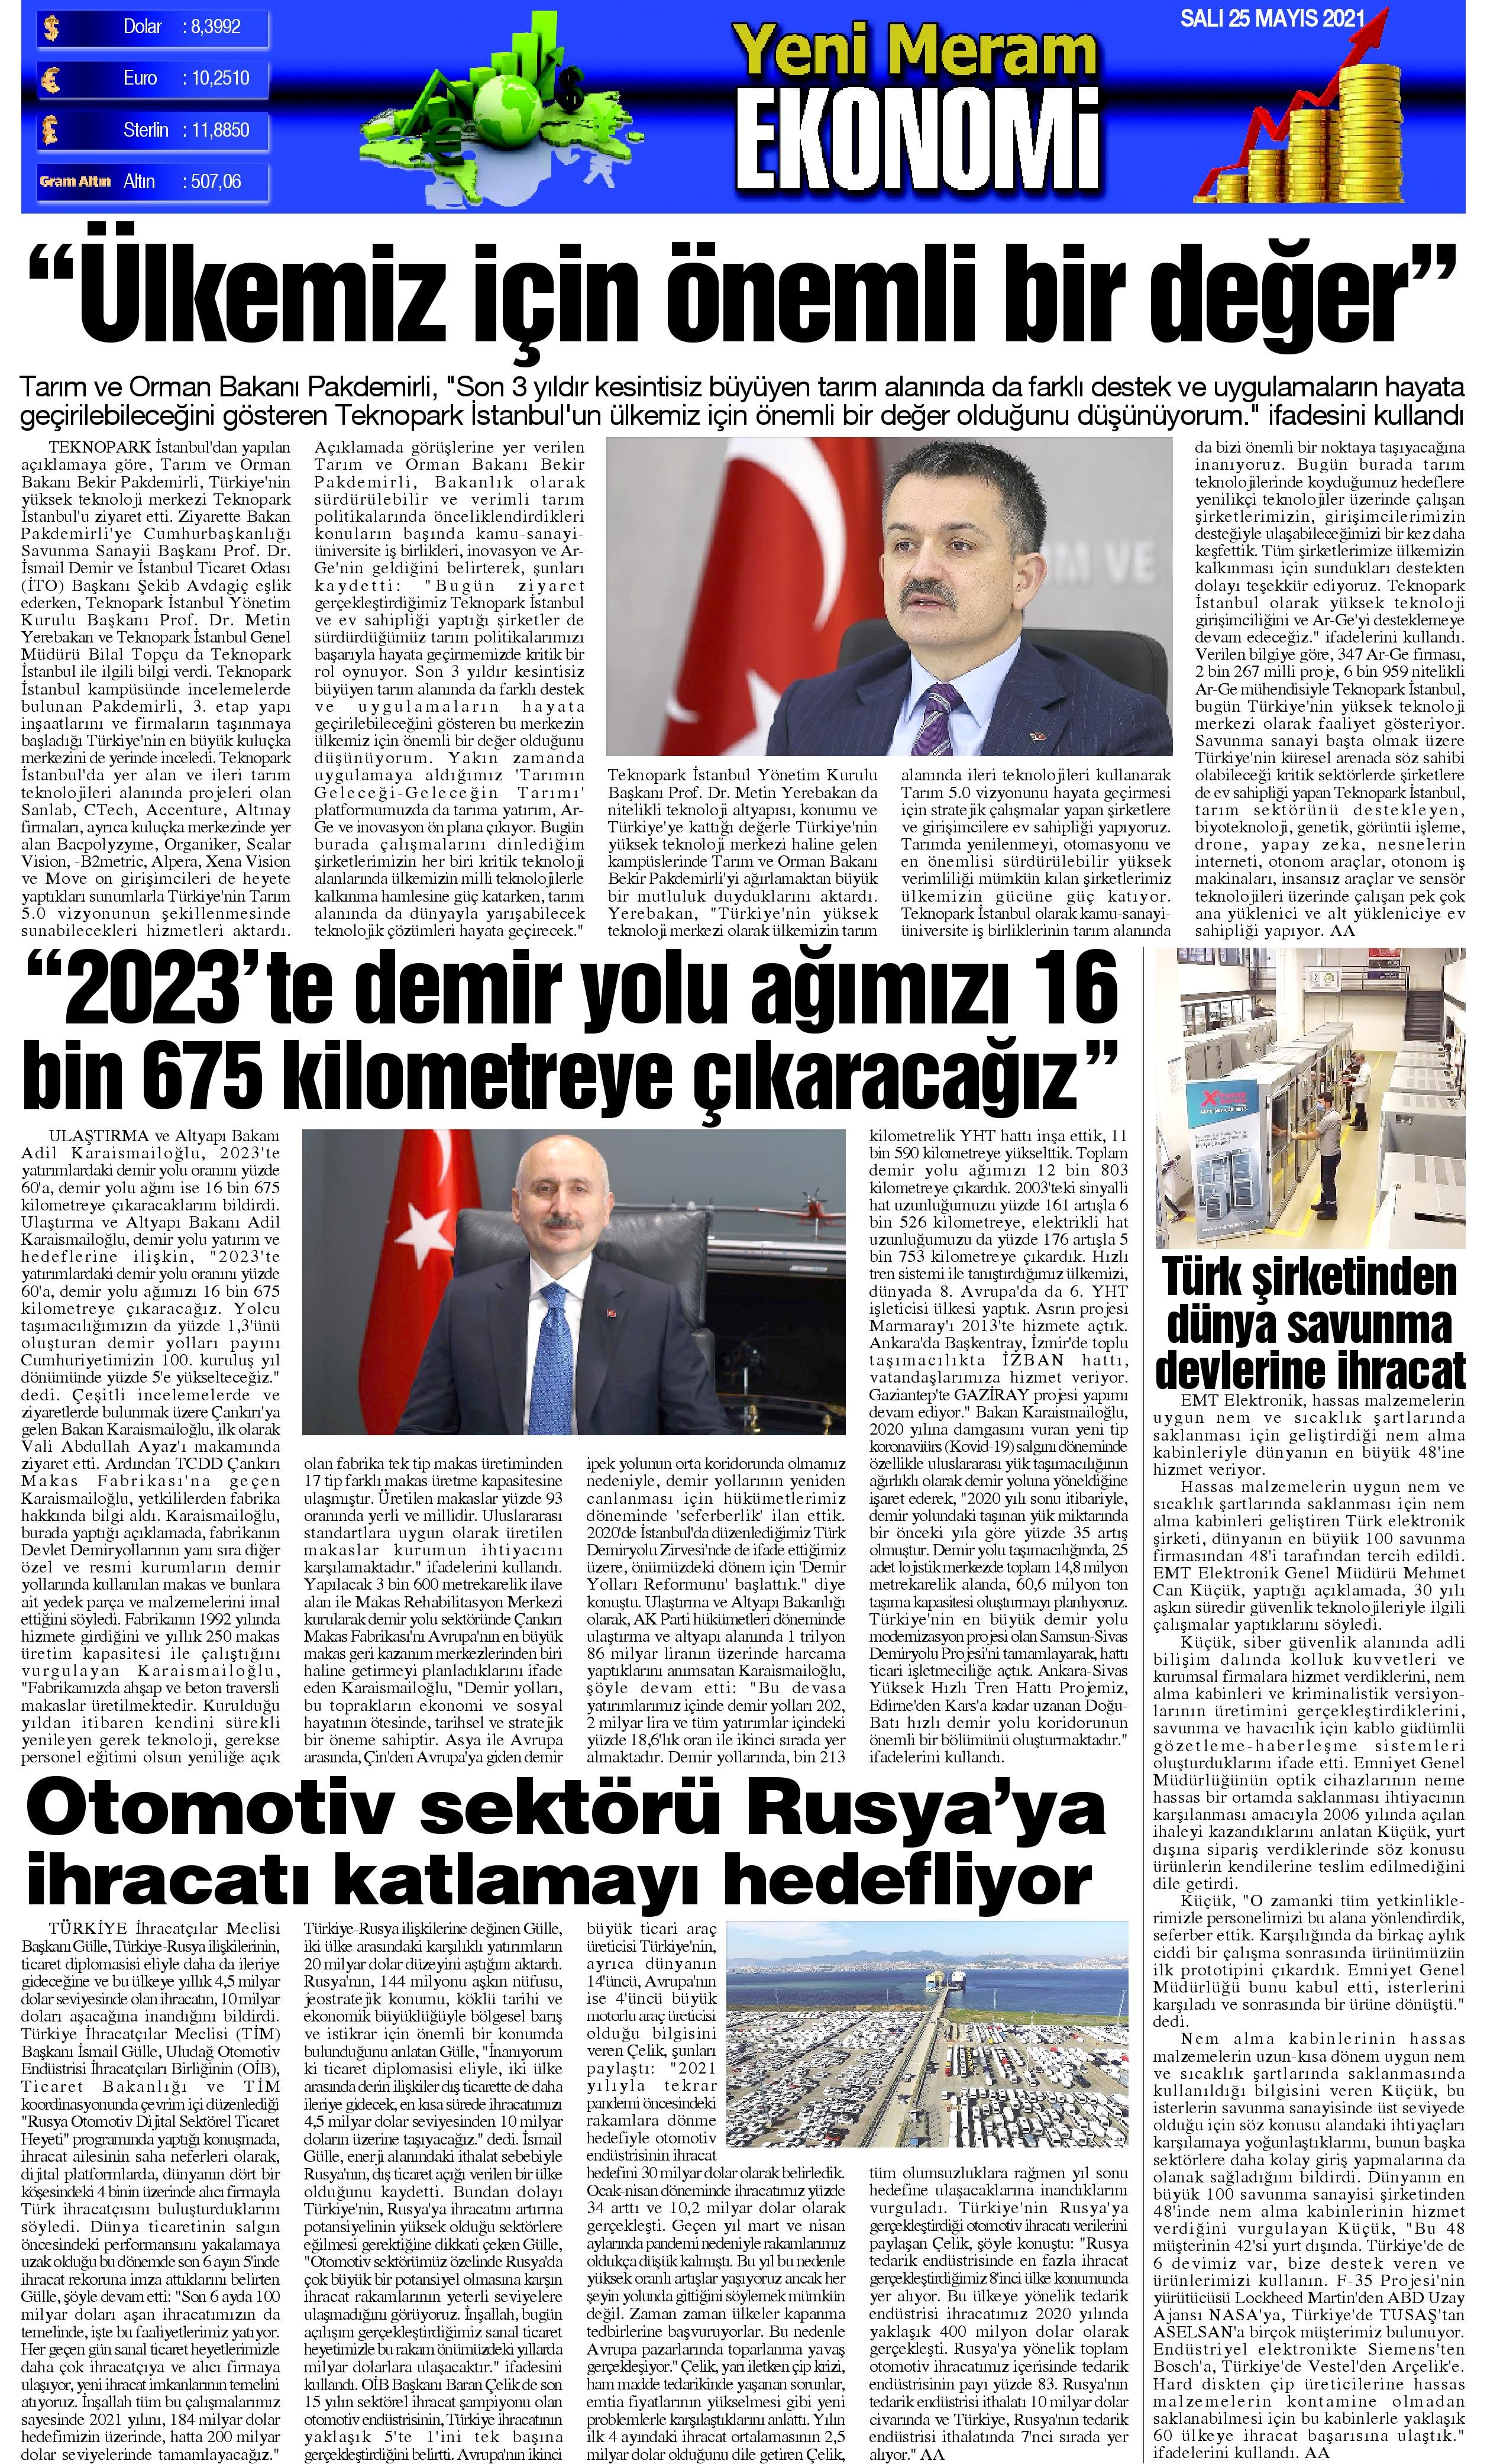 25 Mayıs 2021 Yeni Meram Gazetesi